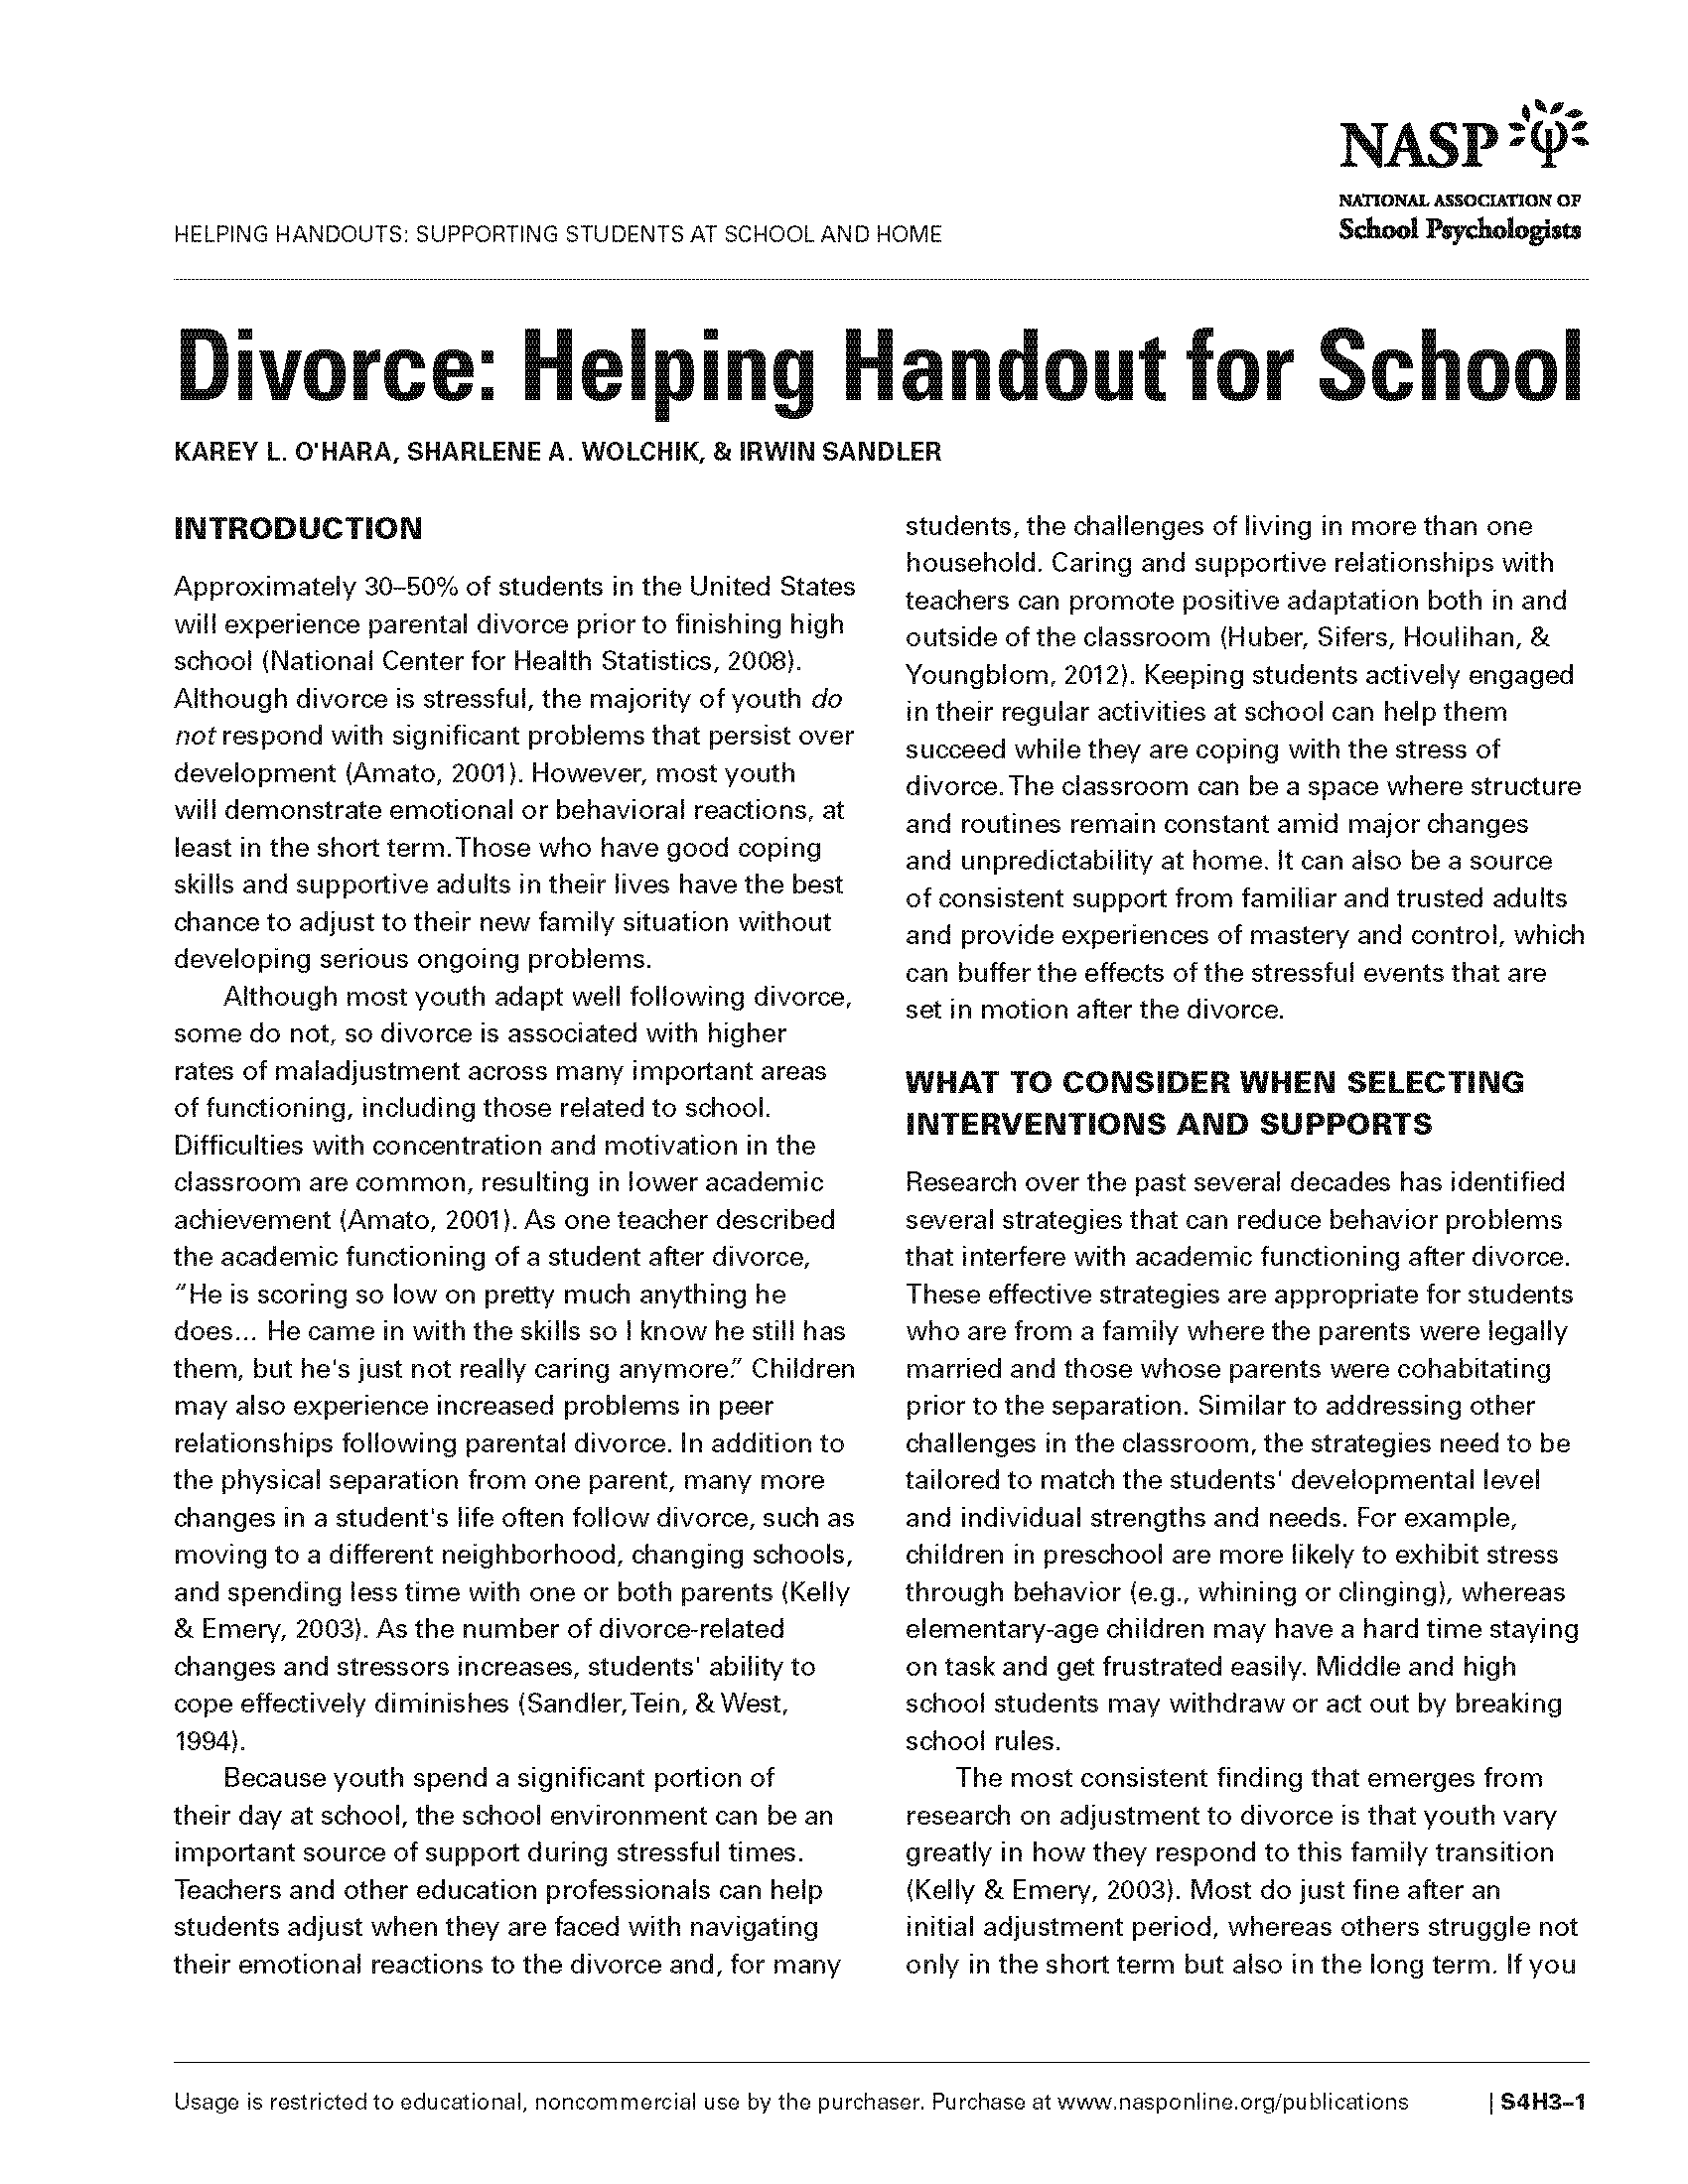 Divorce: Helping Handout for School